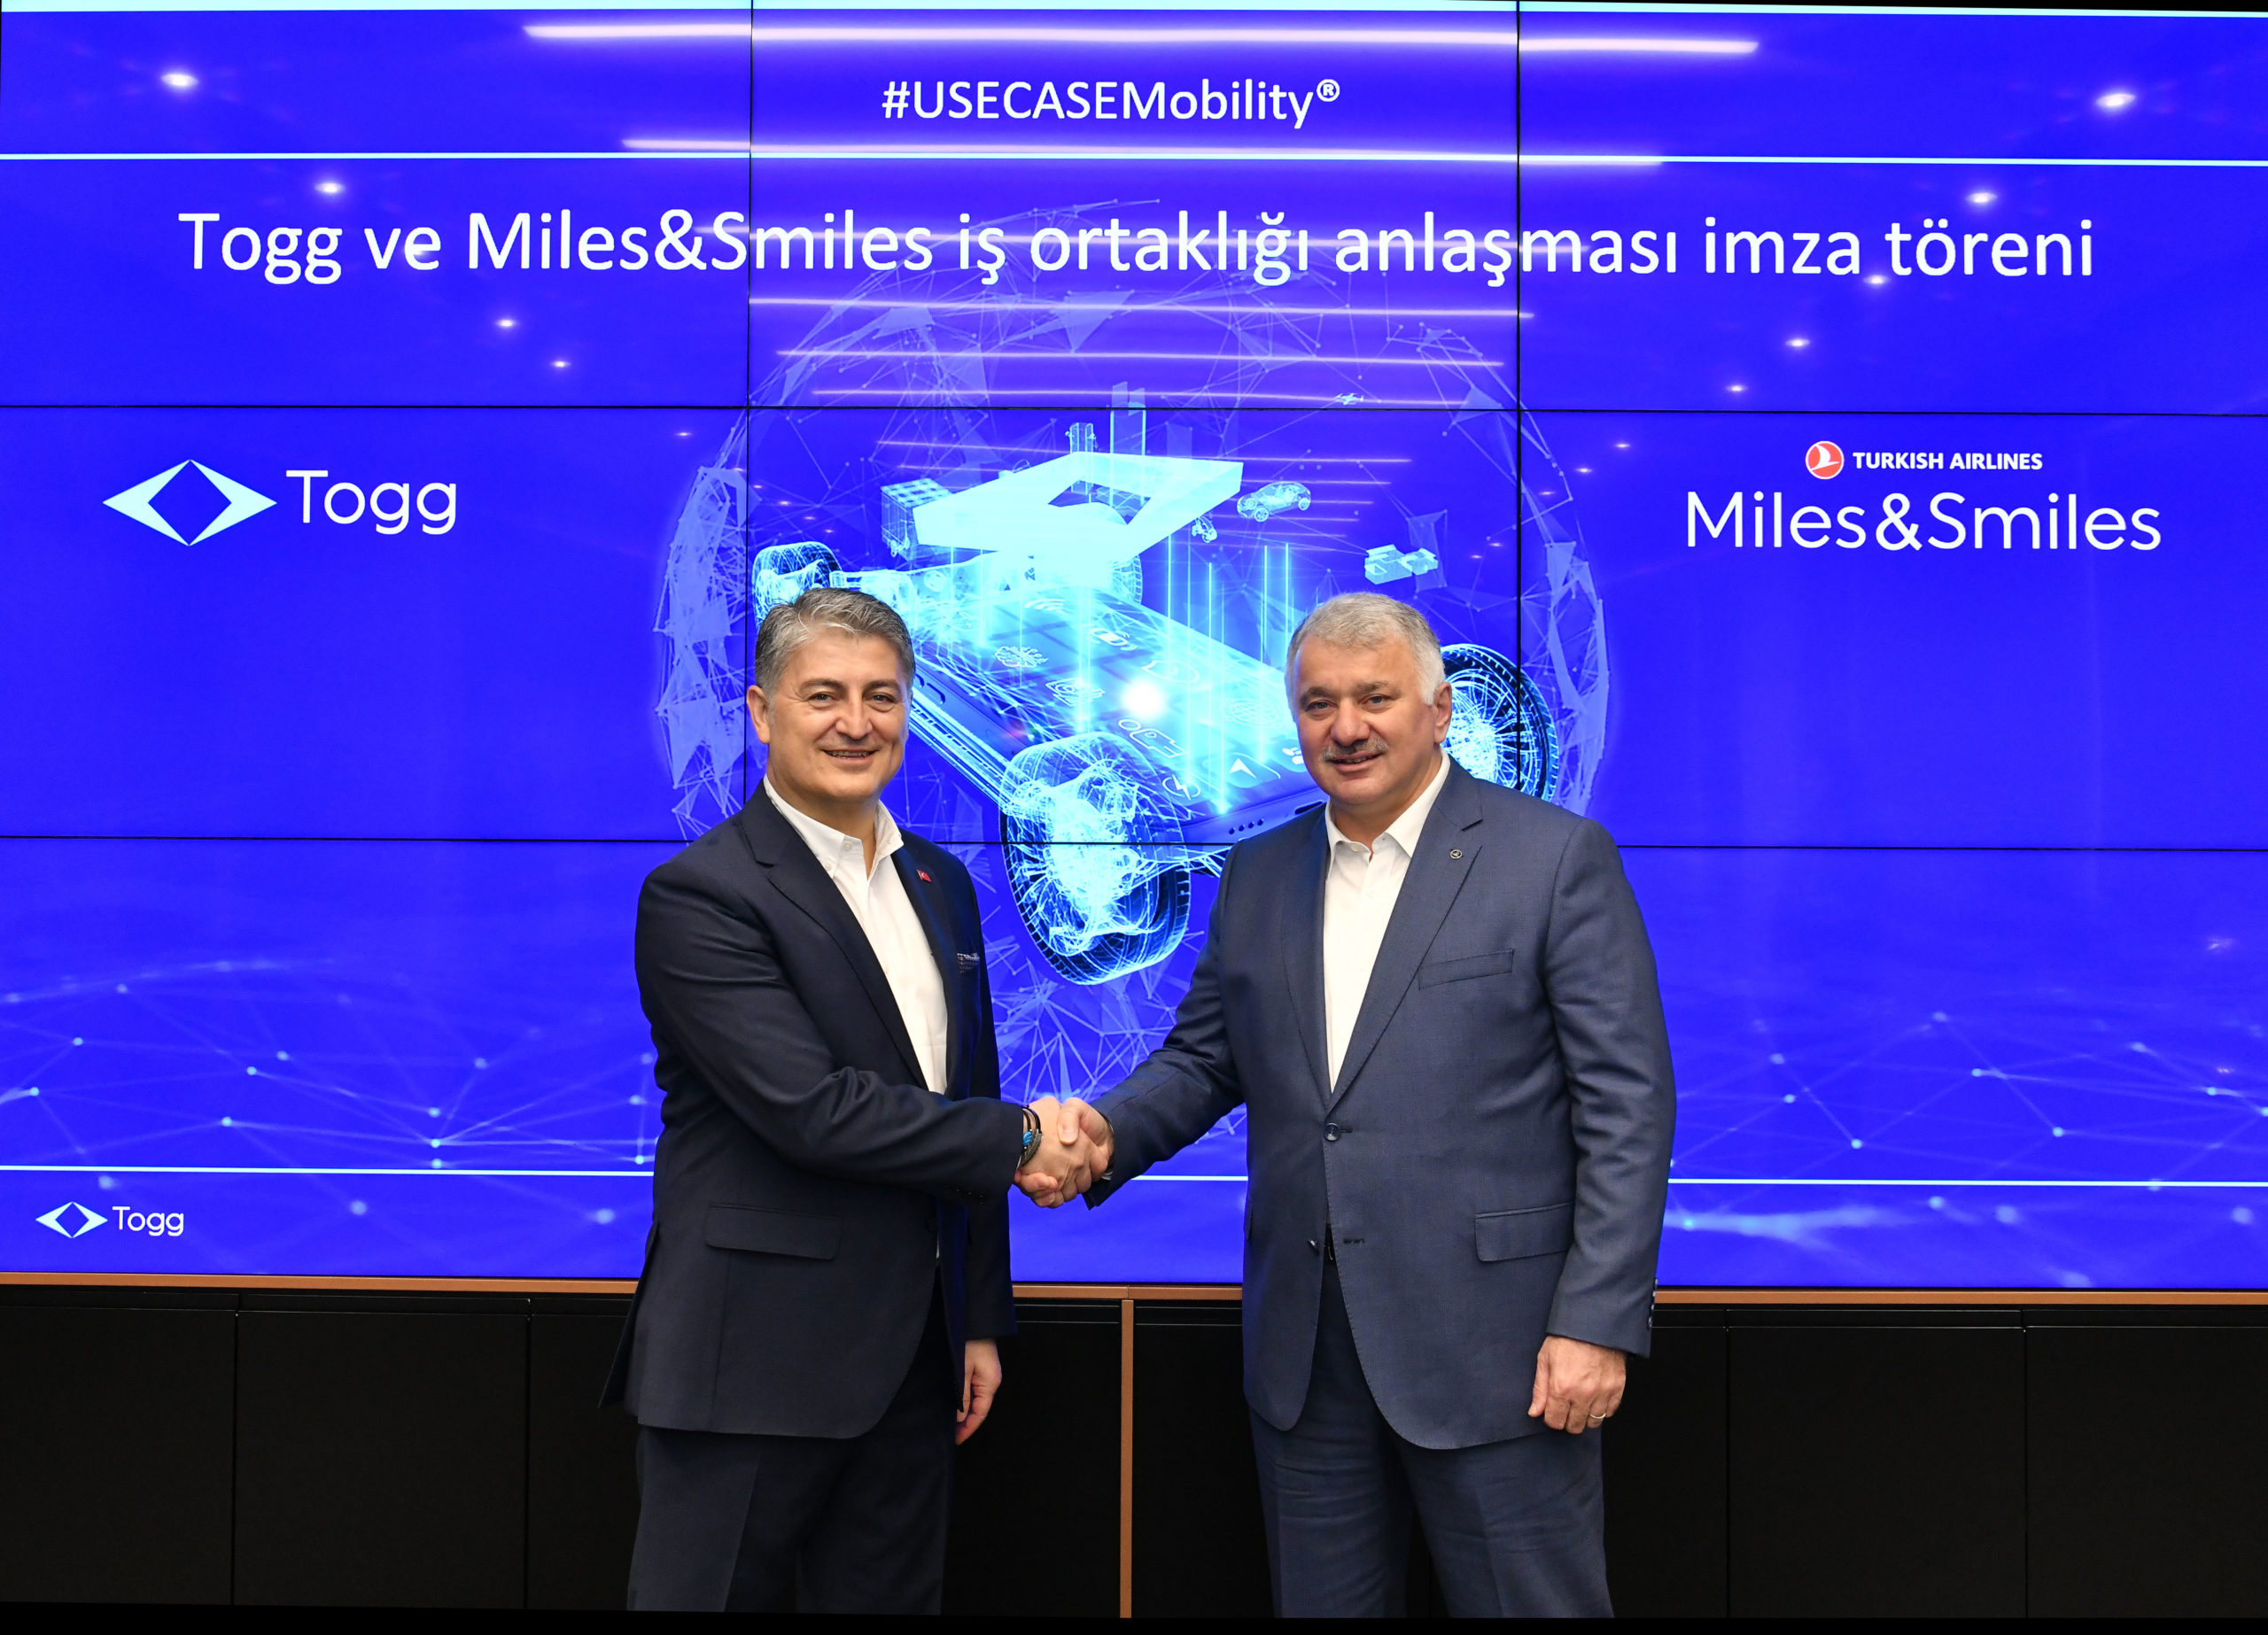 Togg mobilite ekosistemi Türk Hava Yolları Yolcu Programı Miles&Smiles ile Mil kazandıracak